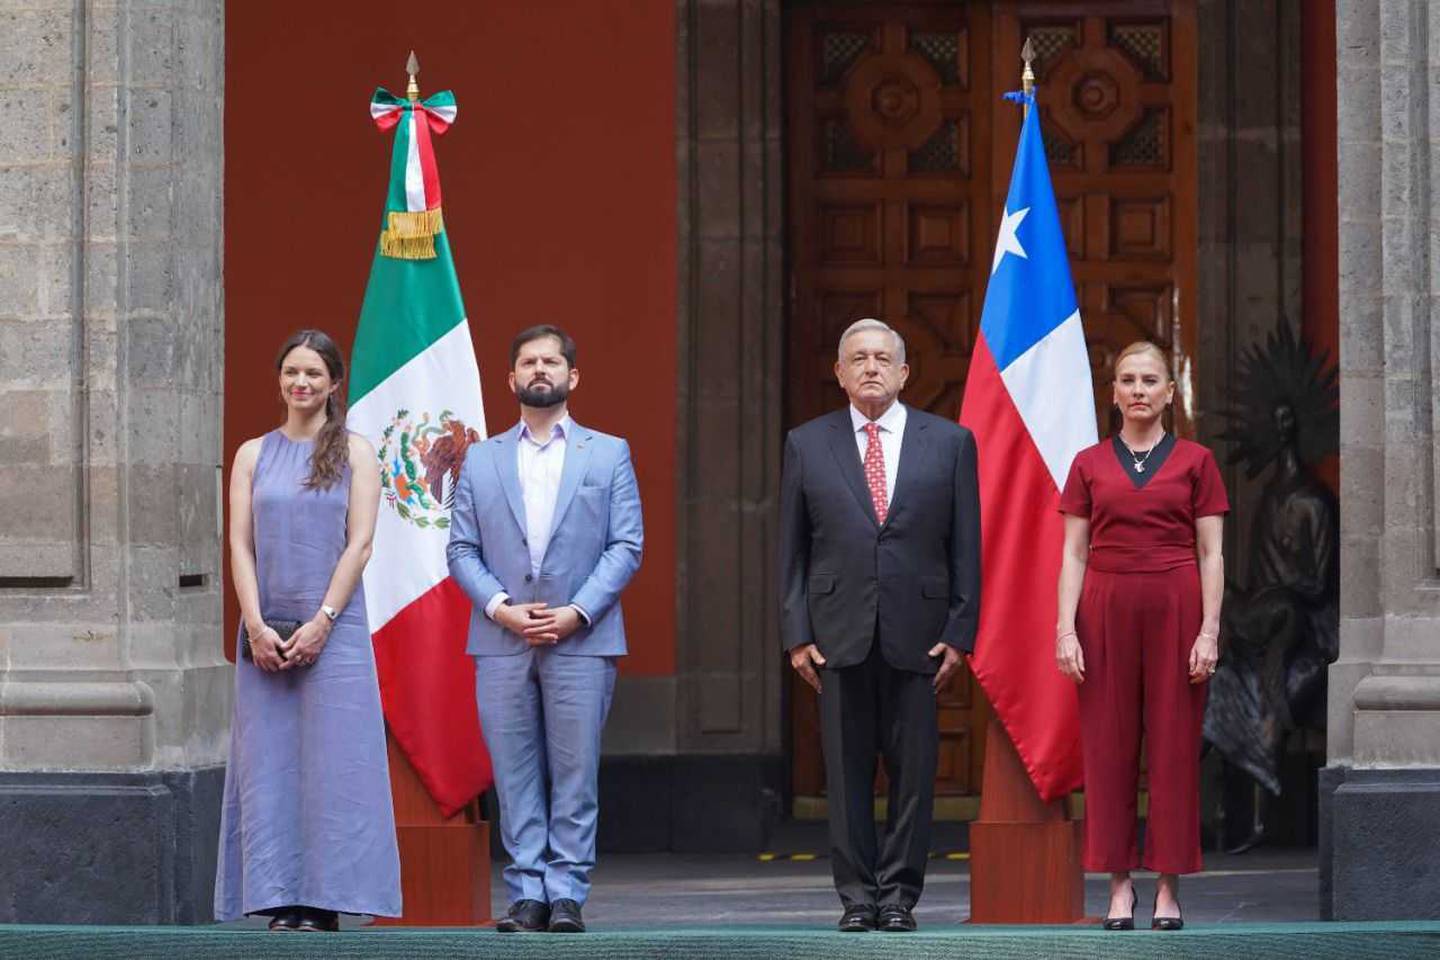 Ambos mandatarios sostendrán un encuentro bilateral luego de que se suspendiera la Cumbre de Líderes de la Alianza del Pacífico conformada por México, Chile, Colombia y Perú.